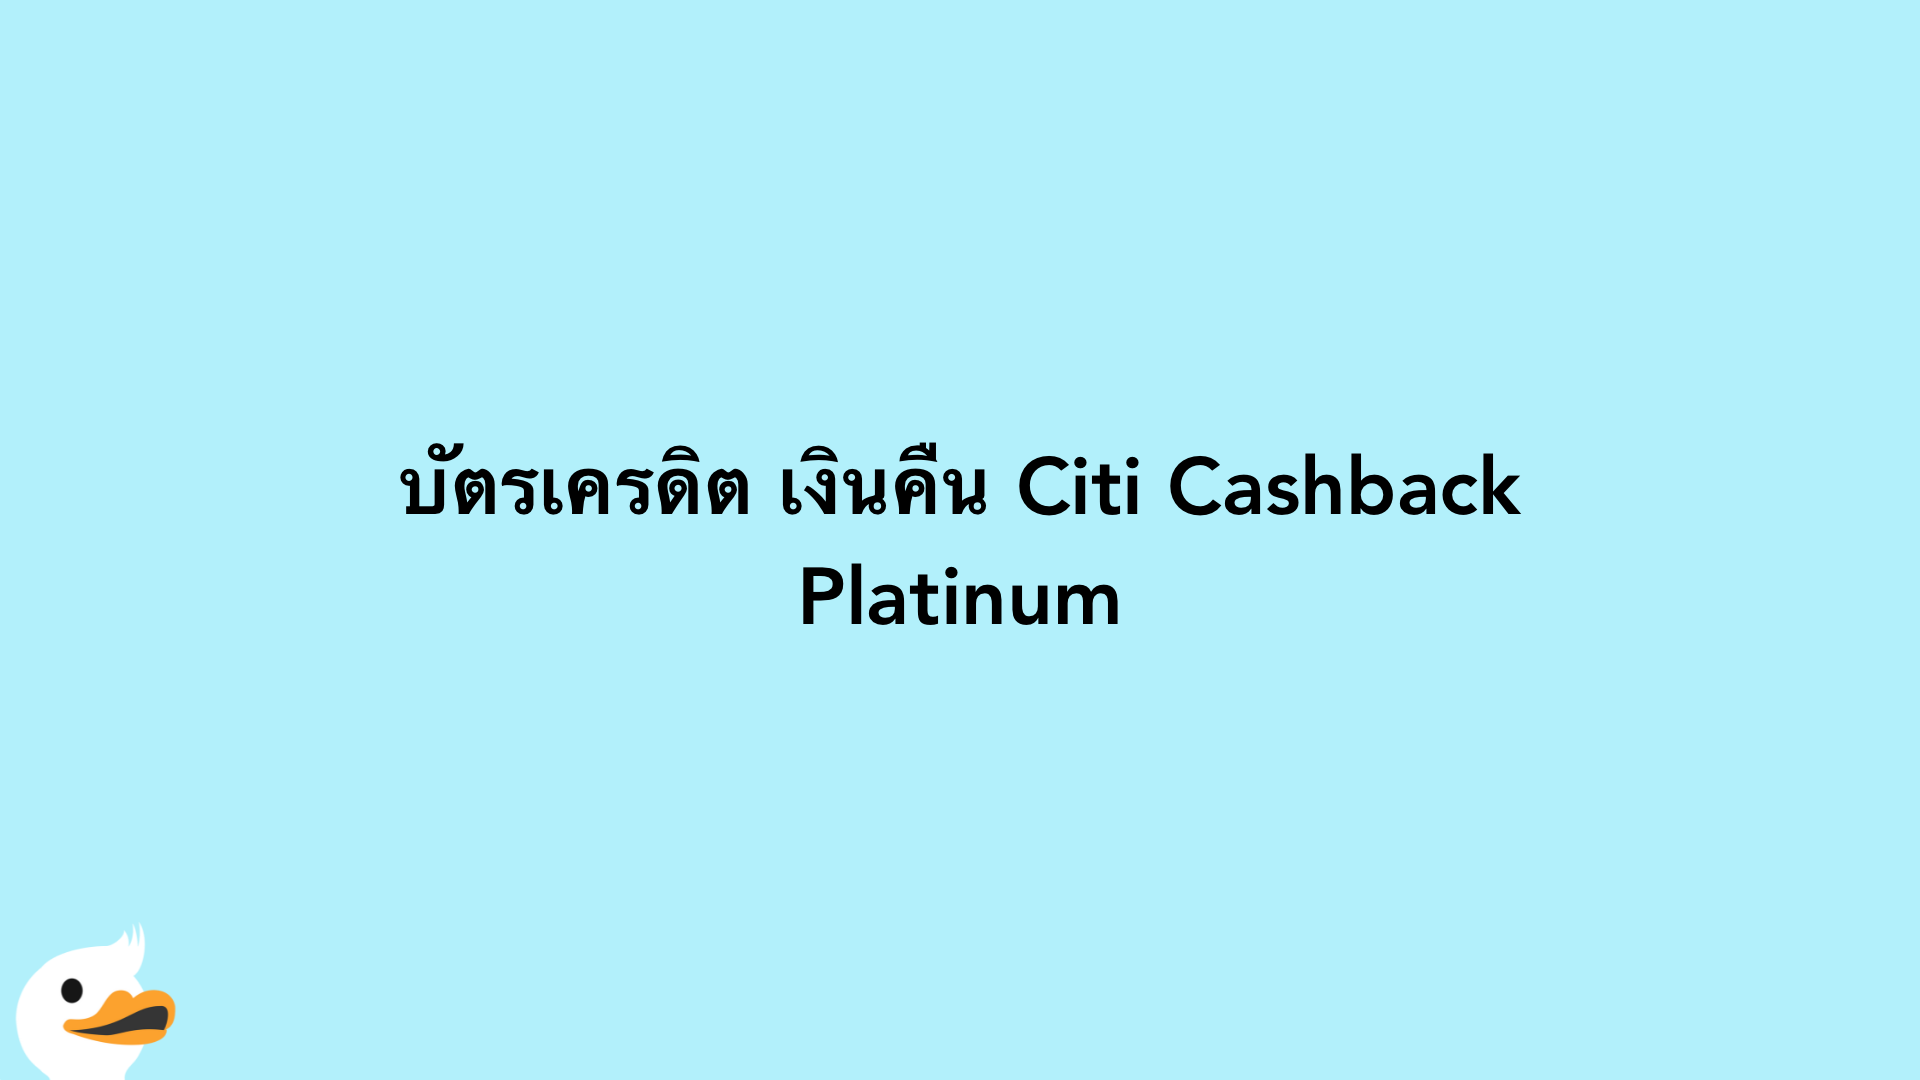 บัตรเครดิต เงินคืน Citi Cashback Platinum